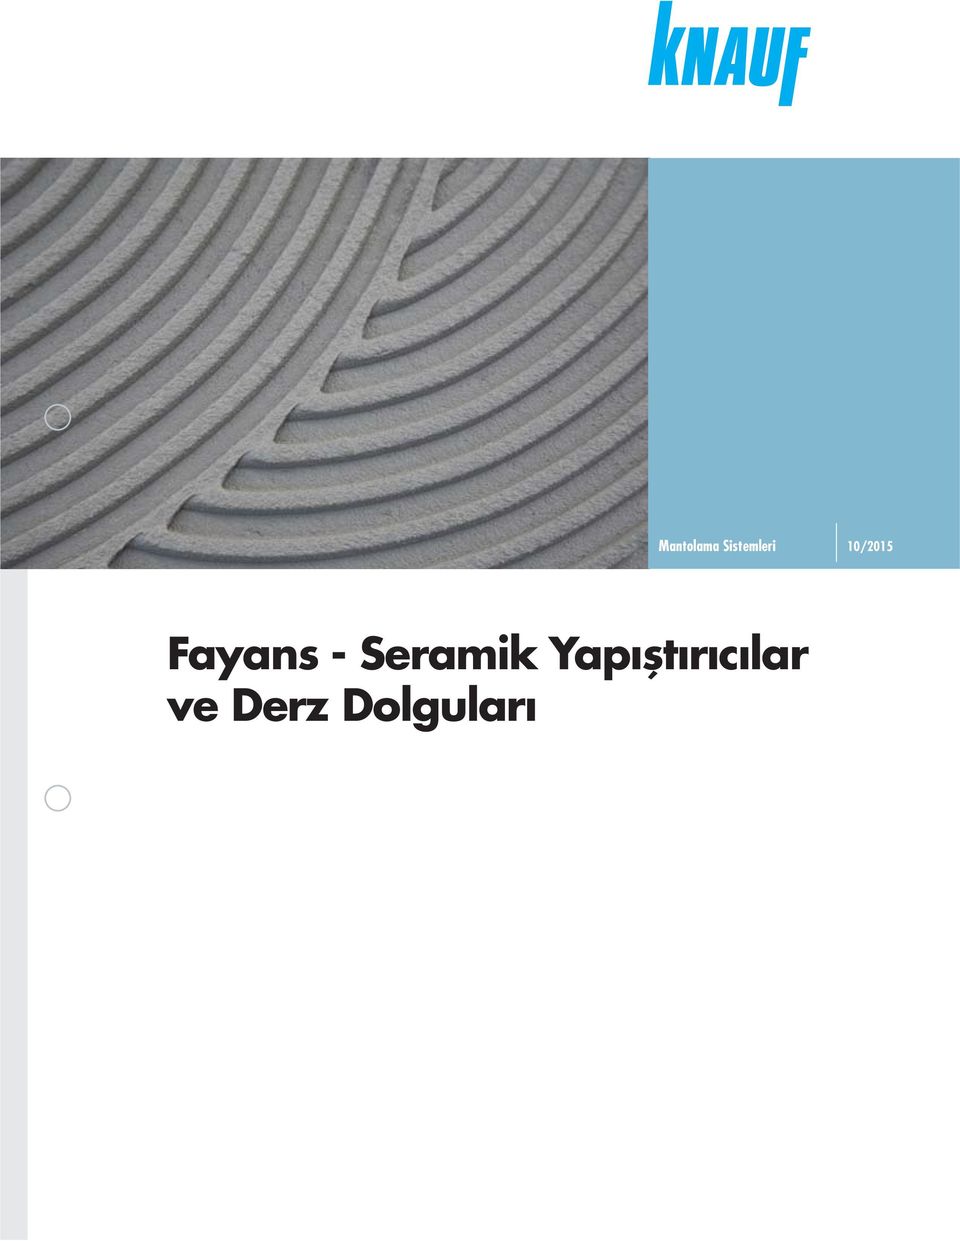 Fayans - Seramik